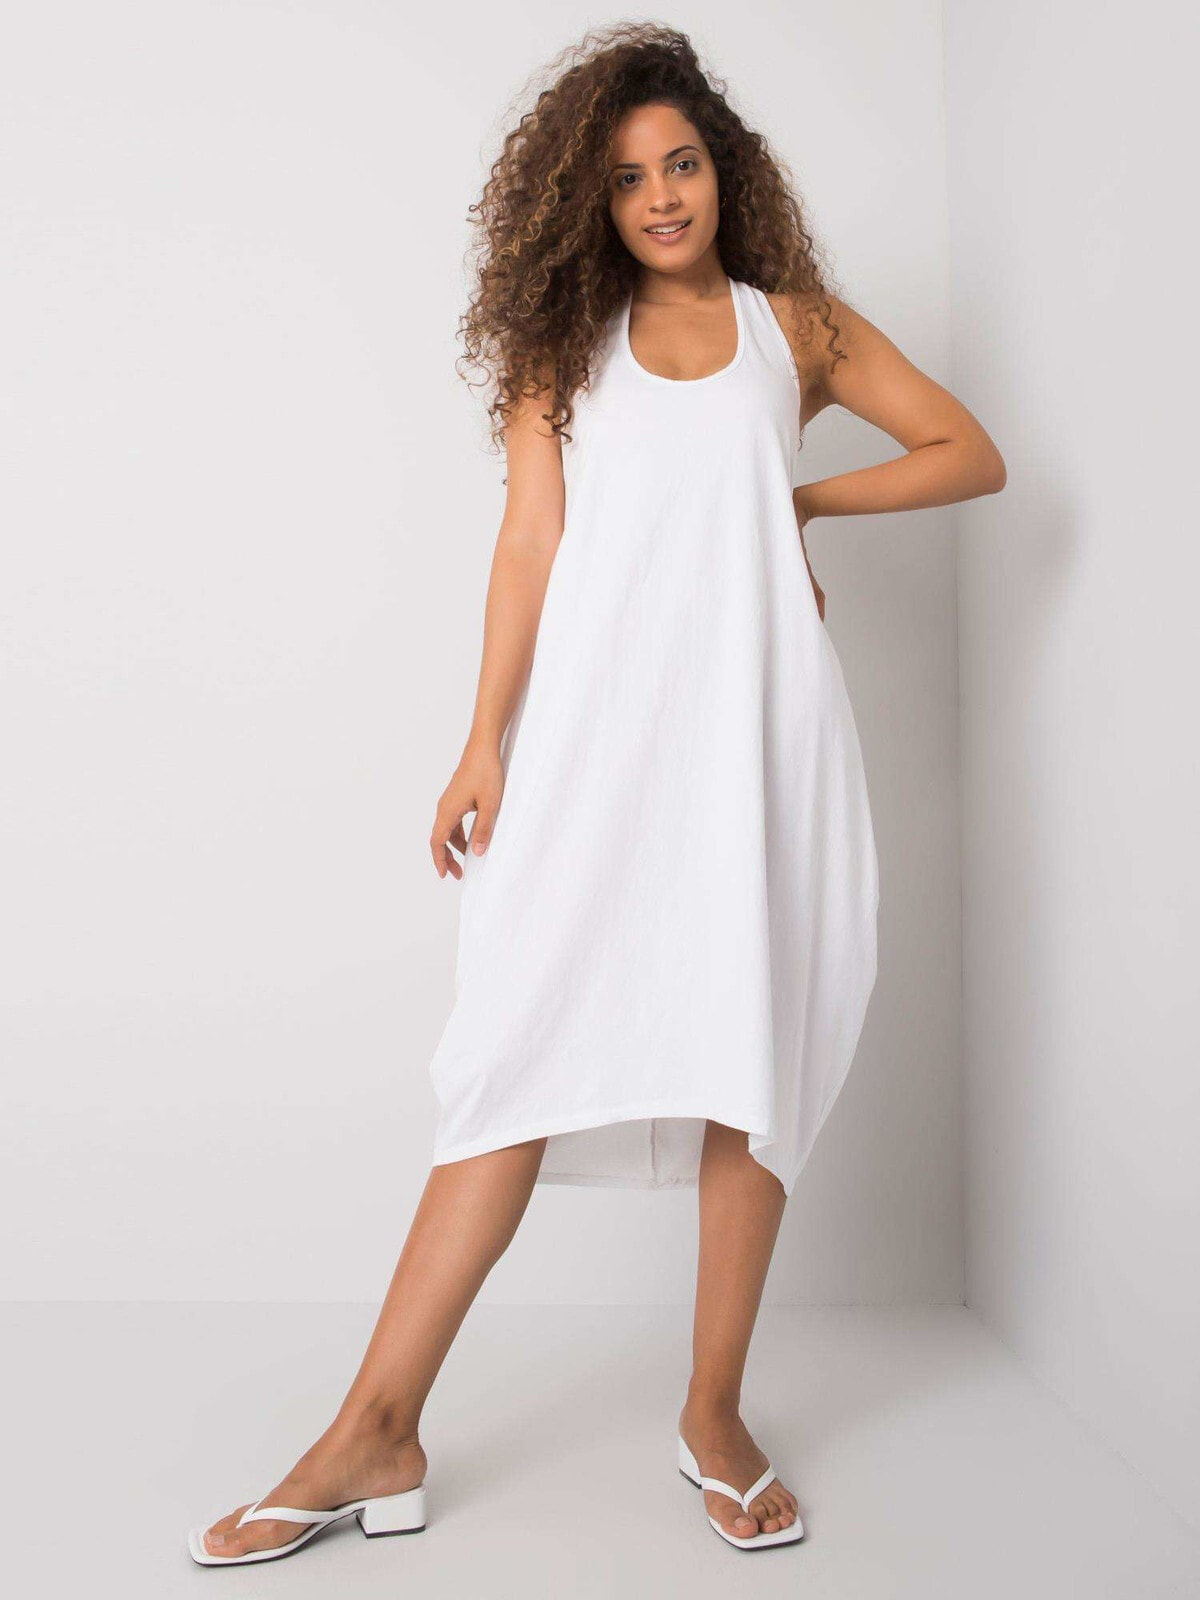 Женское платье без рукавов Factory Price белый